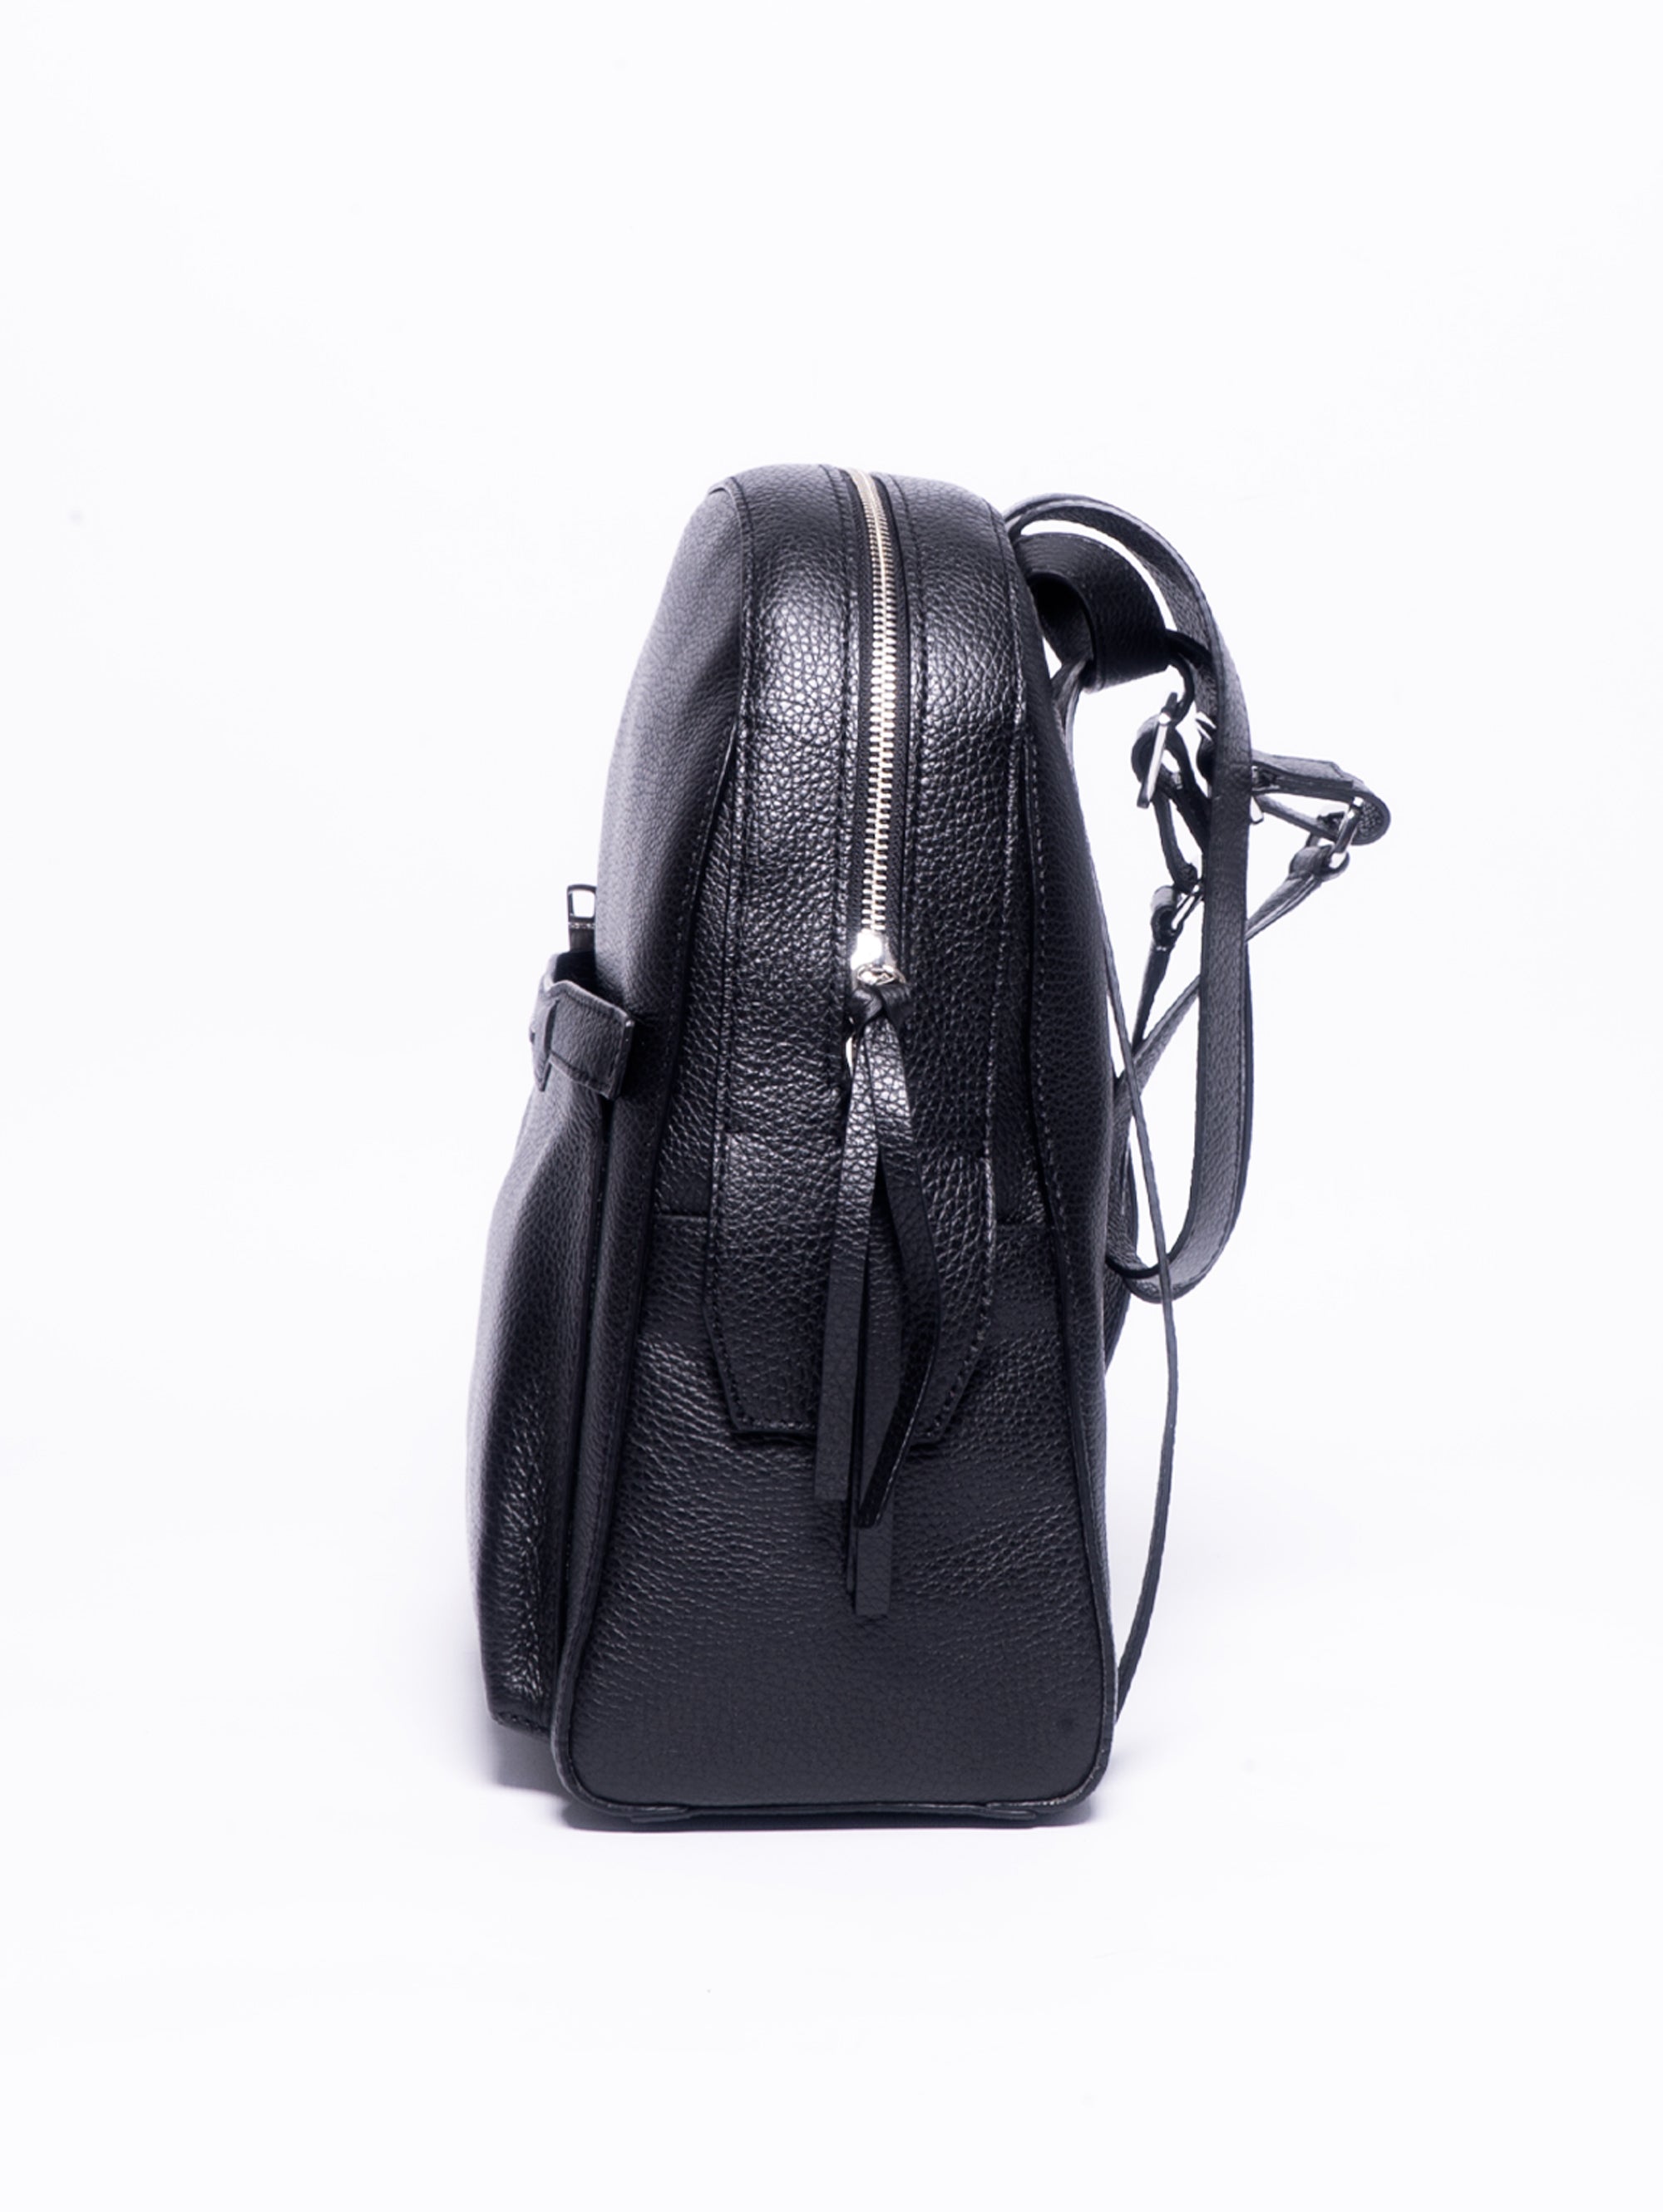 Schicker Rucksack aus schwarzem genarbtem Leder